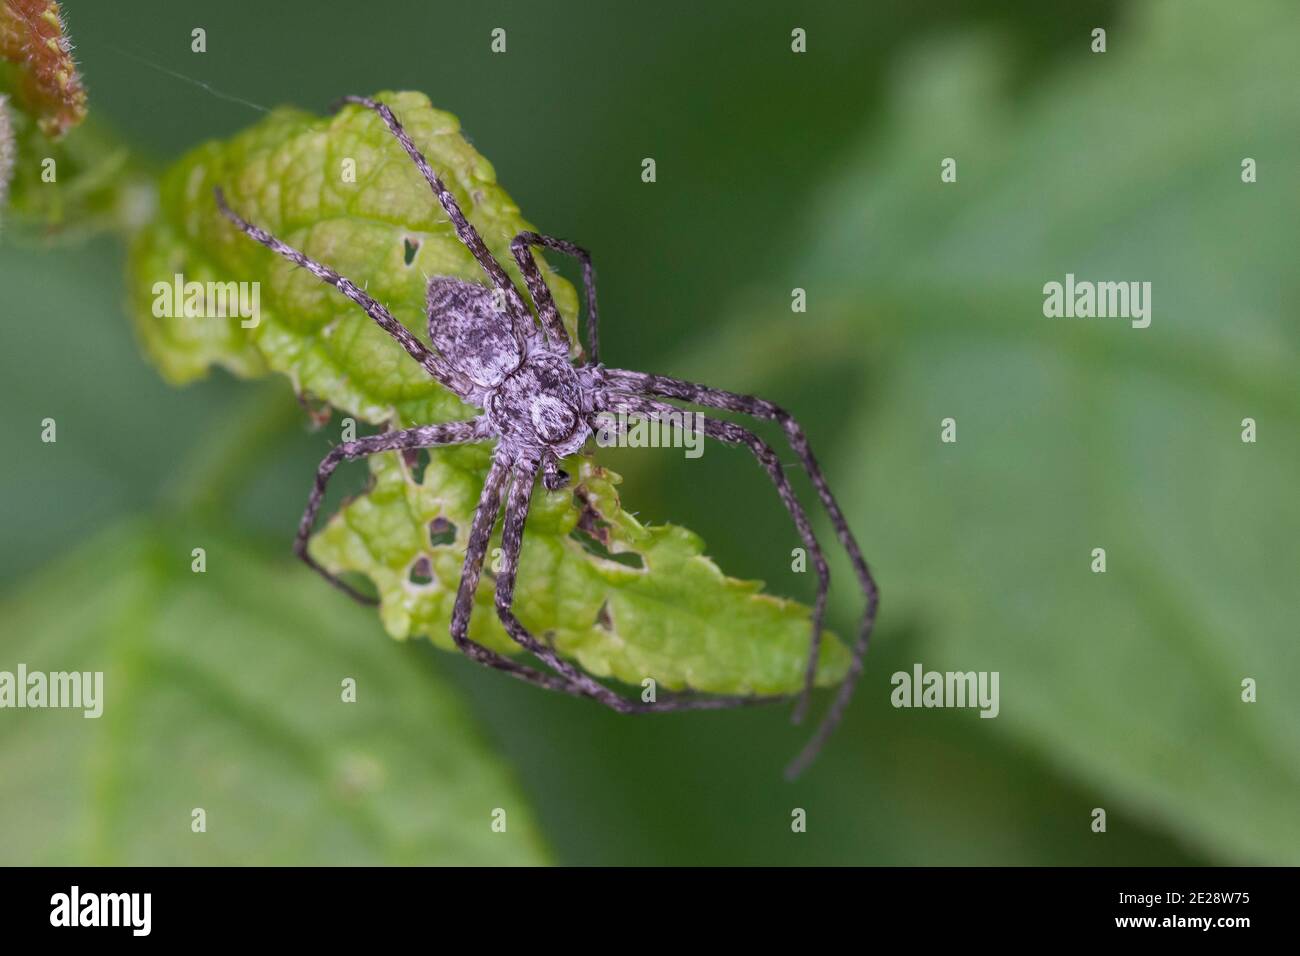 Araignée de crabe philodromid, araignée de crabe errante (Philodromus spec.), qui rôde sur une feuille, en Allemagne Banque D'Images